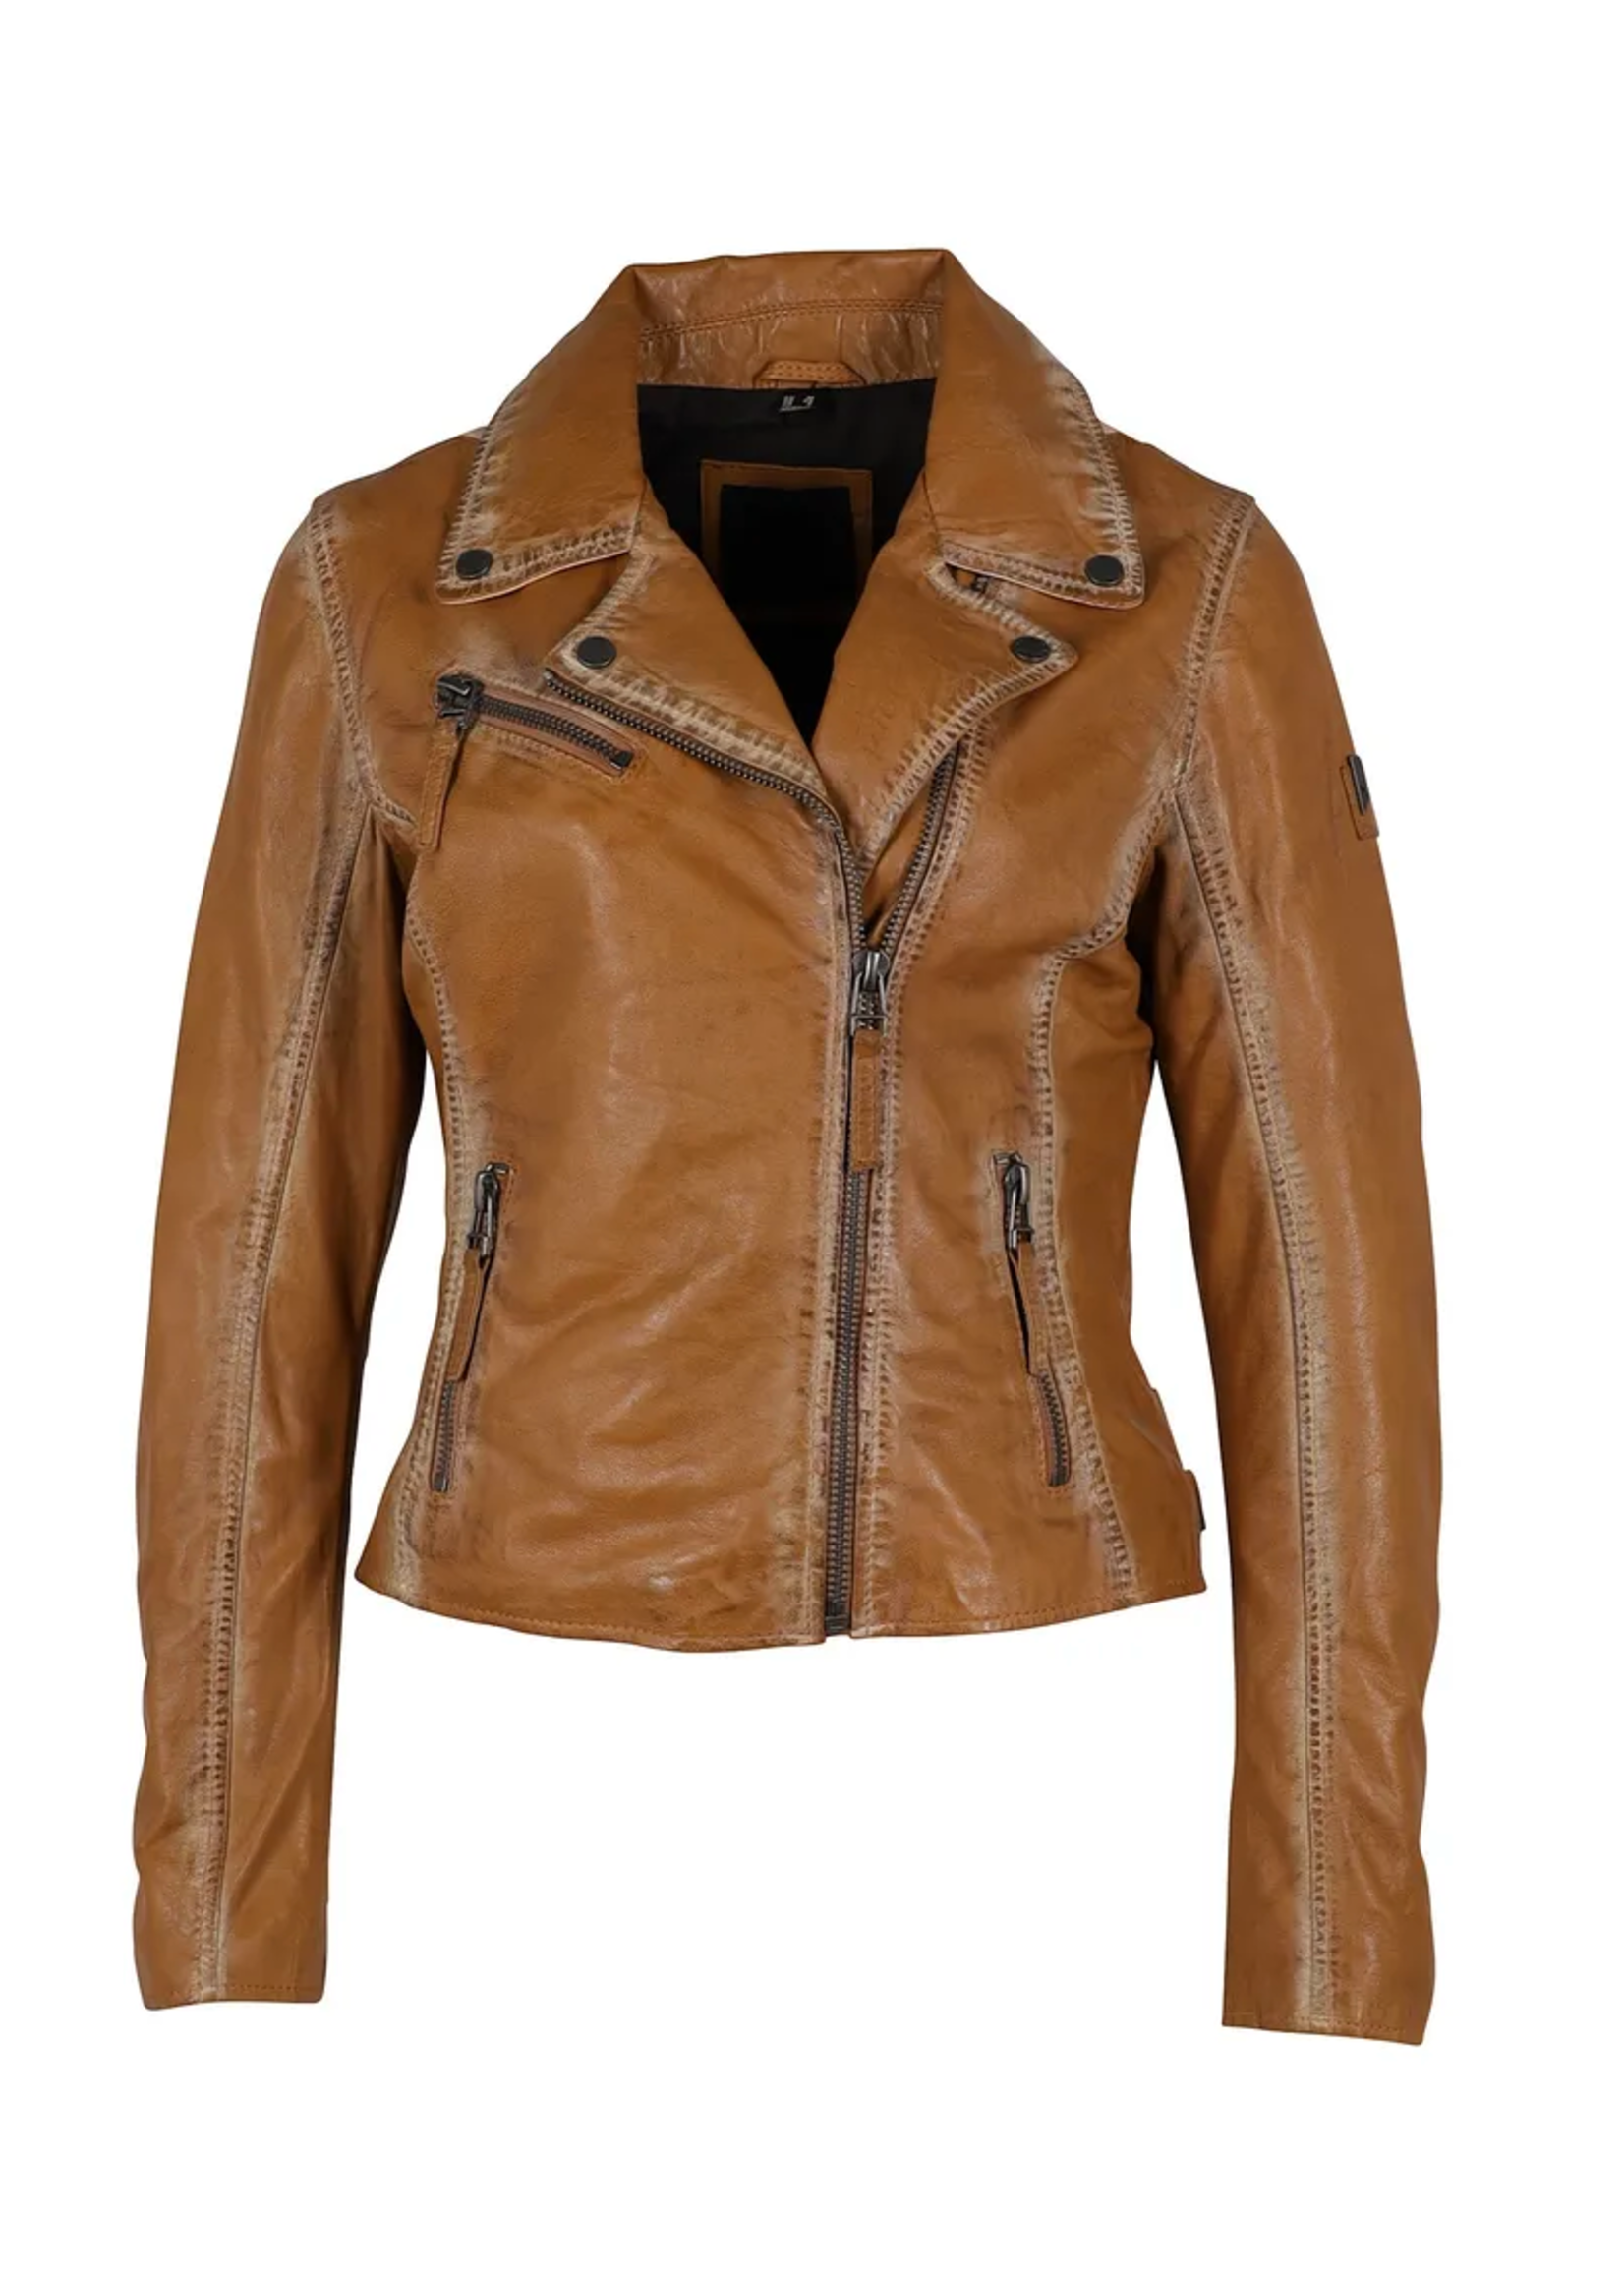 Mauritius Christy Leather Jacket